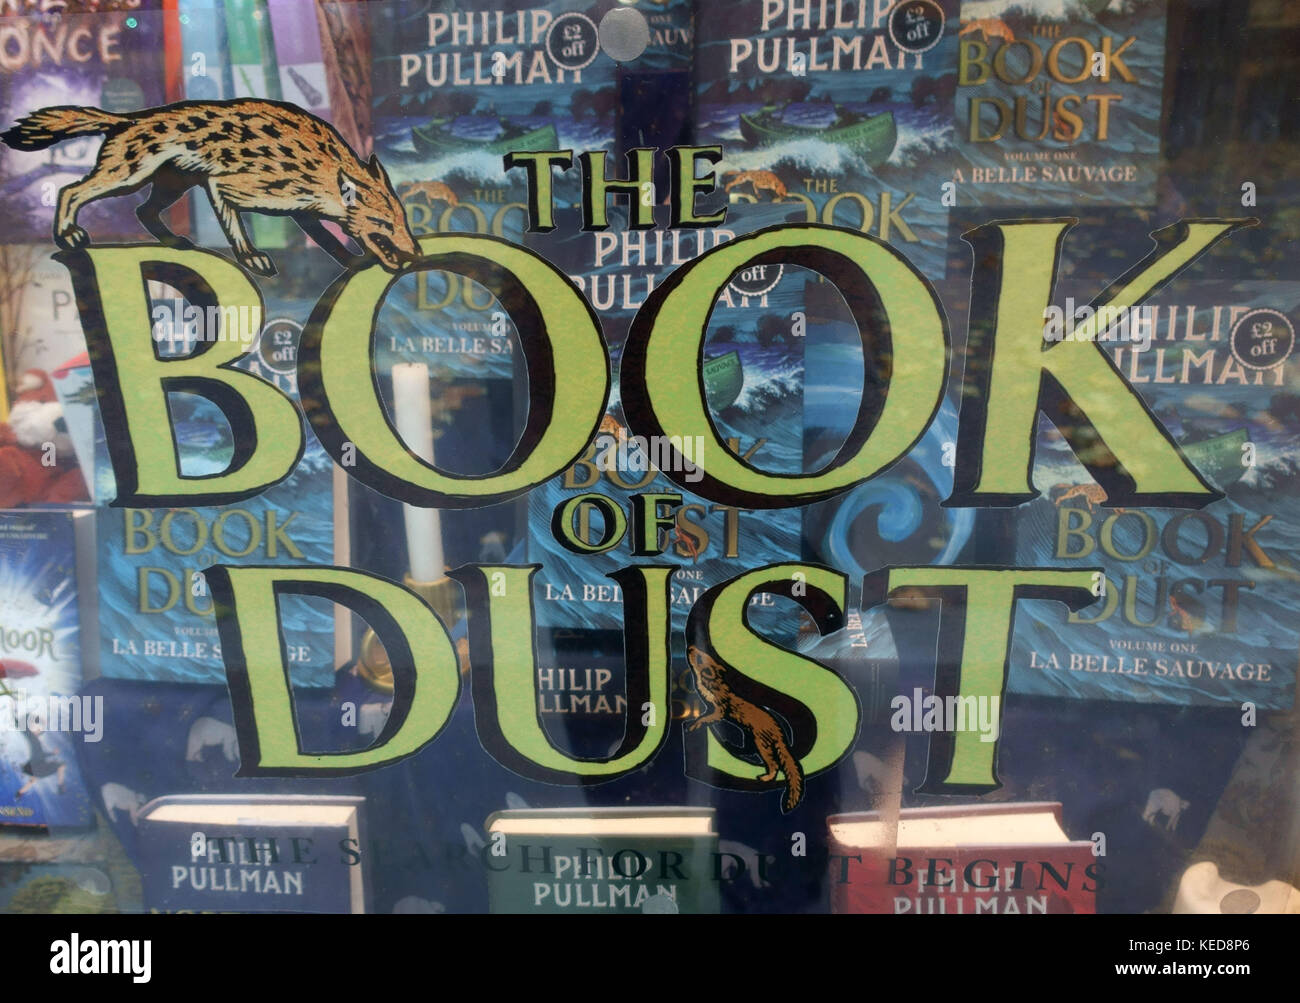 Buchhandlung für neue Philip Pullman Buch "Das Buch der Staub', London Stockfoto